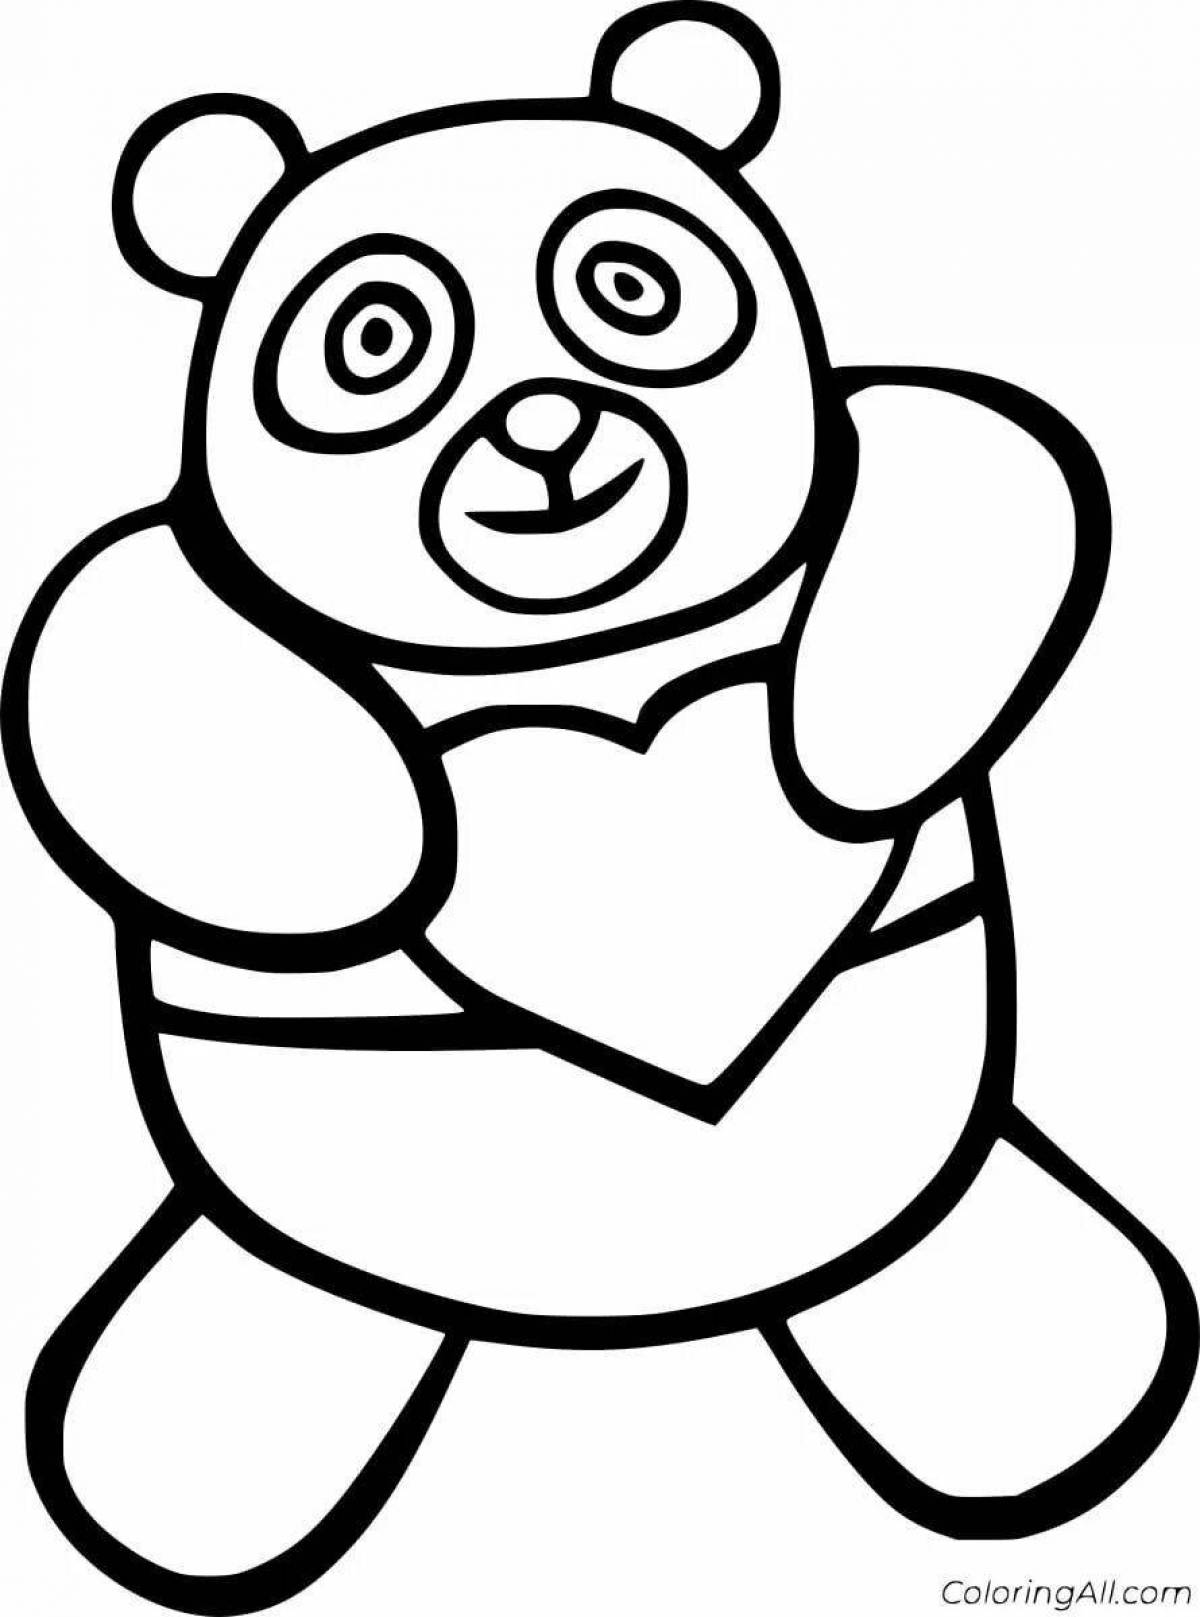 Яркая раскраска медведь панда